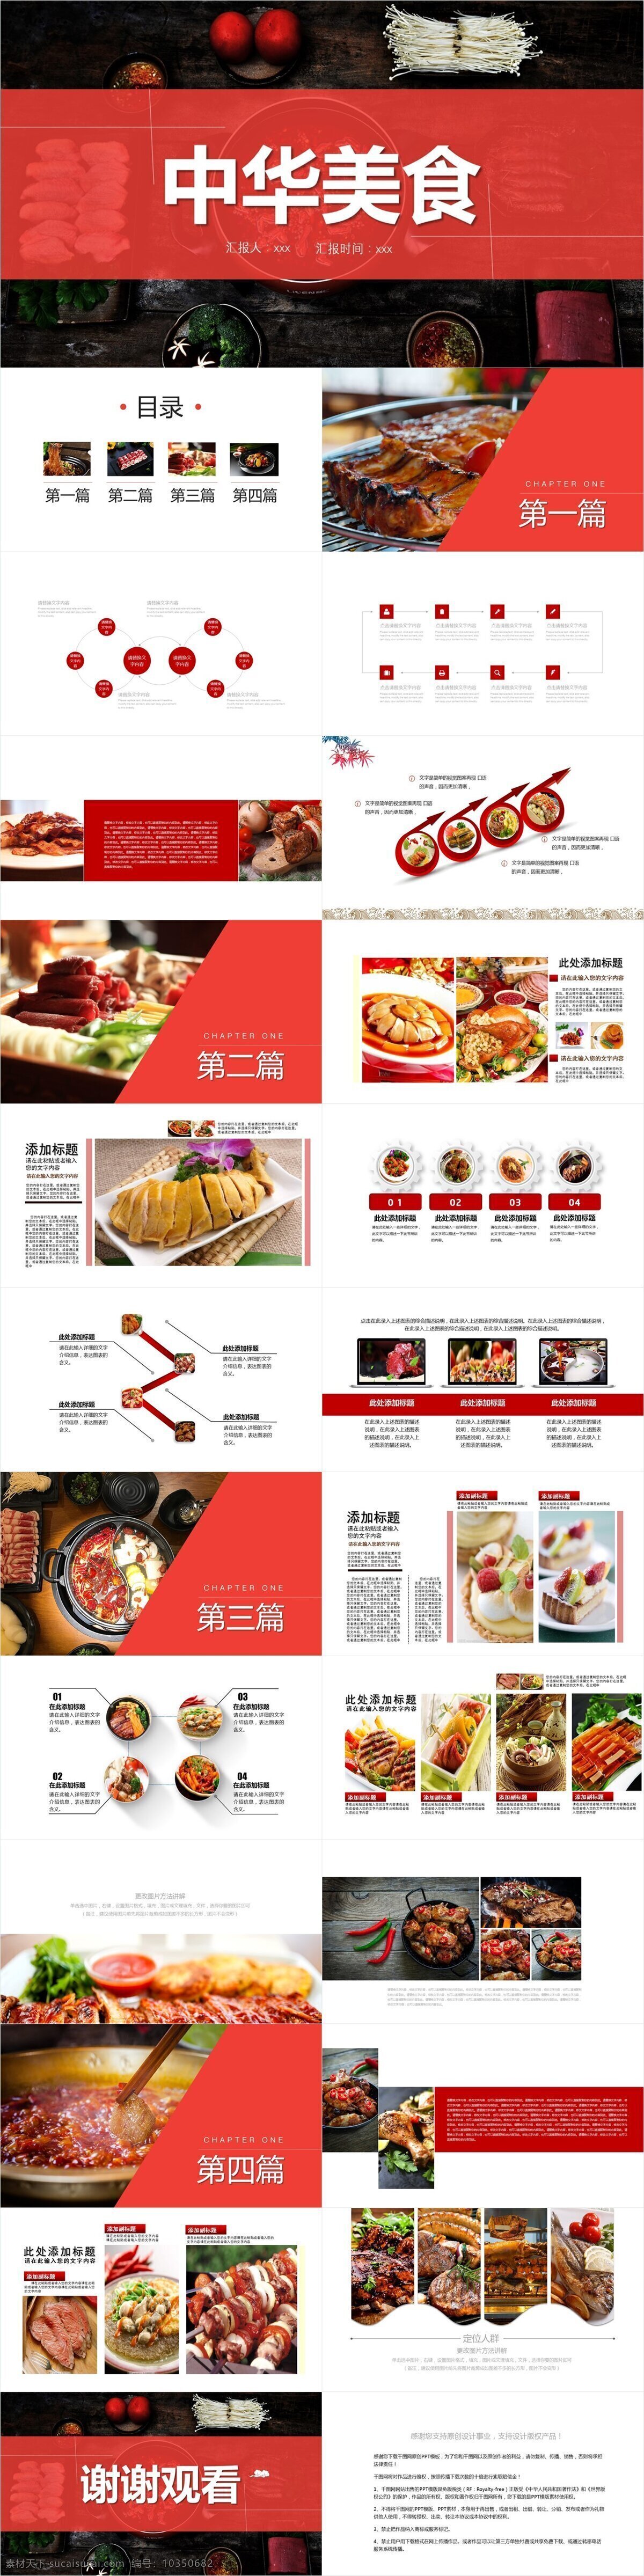 经典 创意 中华 美食 宣传 模板 企业宣传 企业简介 中华美食 产品介绍 商务合作 策划